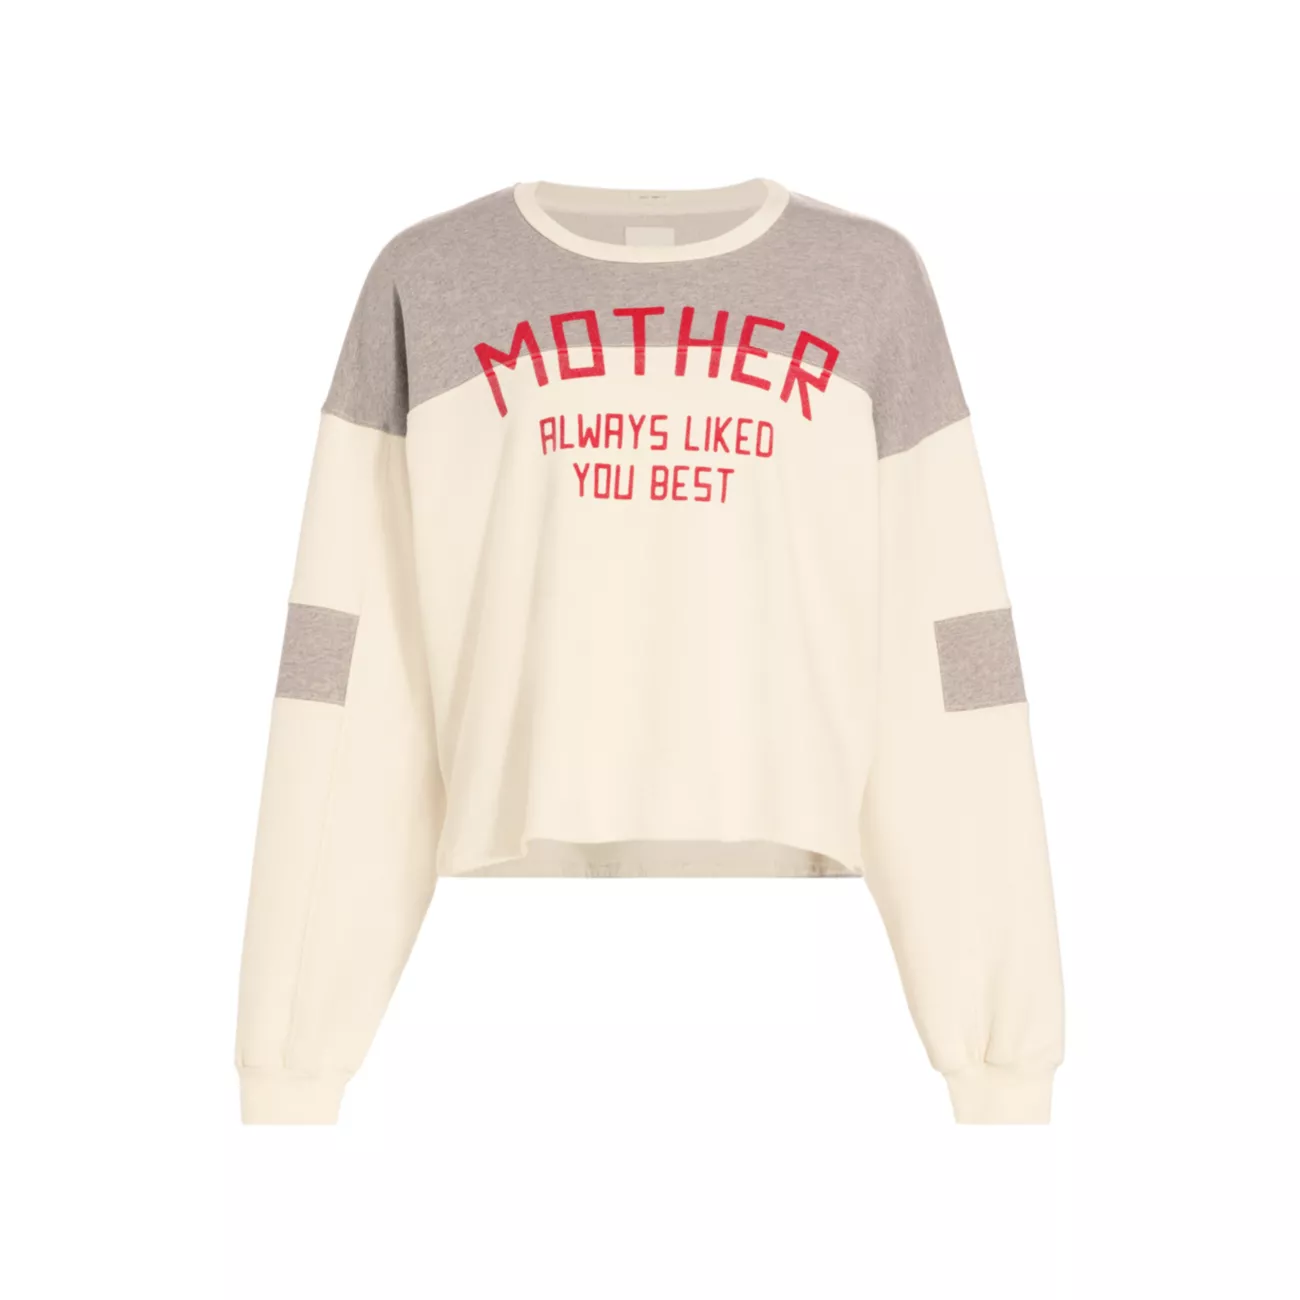 Пуловер с принтом логотипа The Champ MOTHER